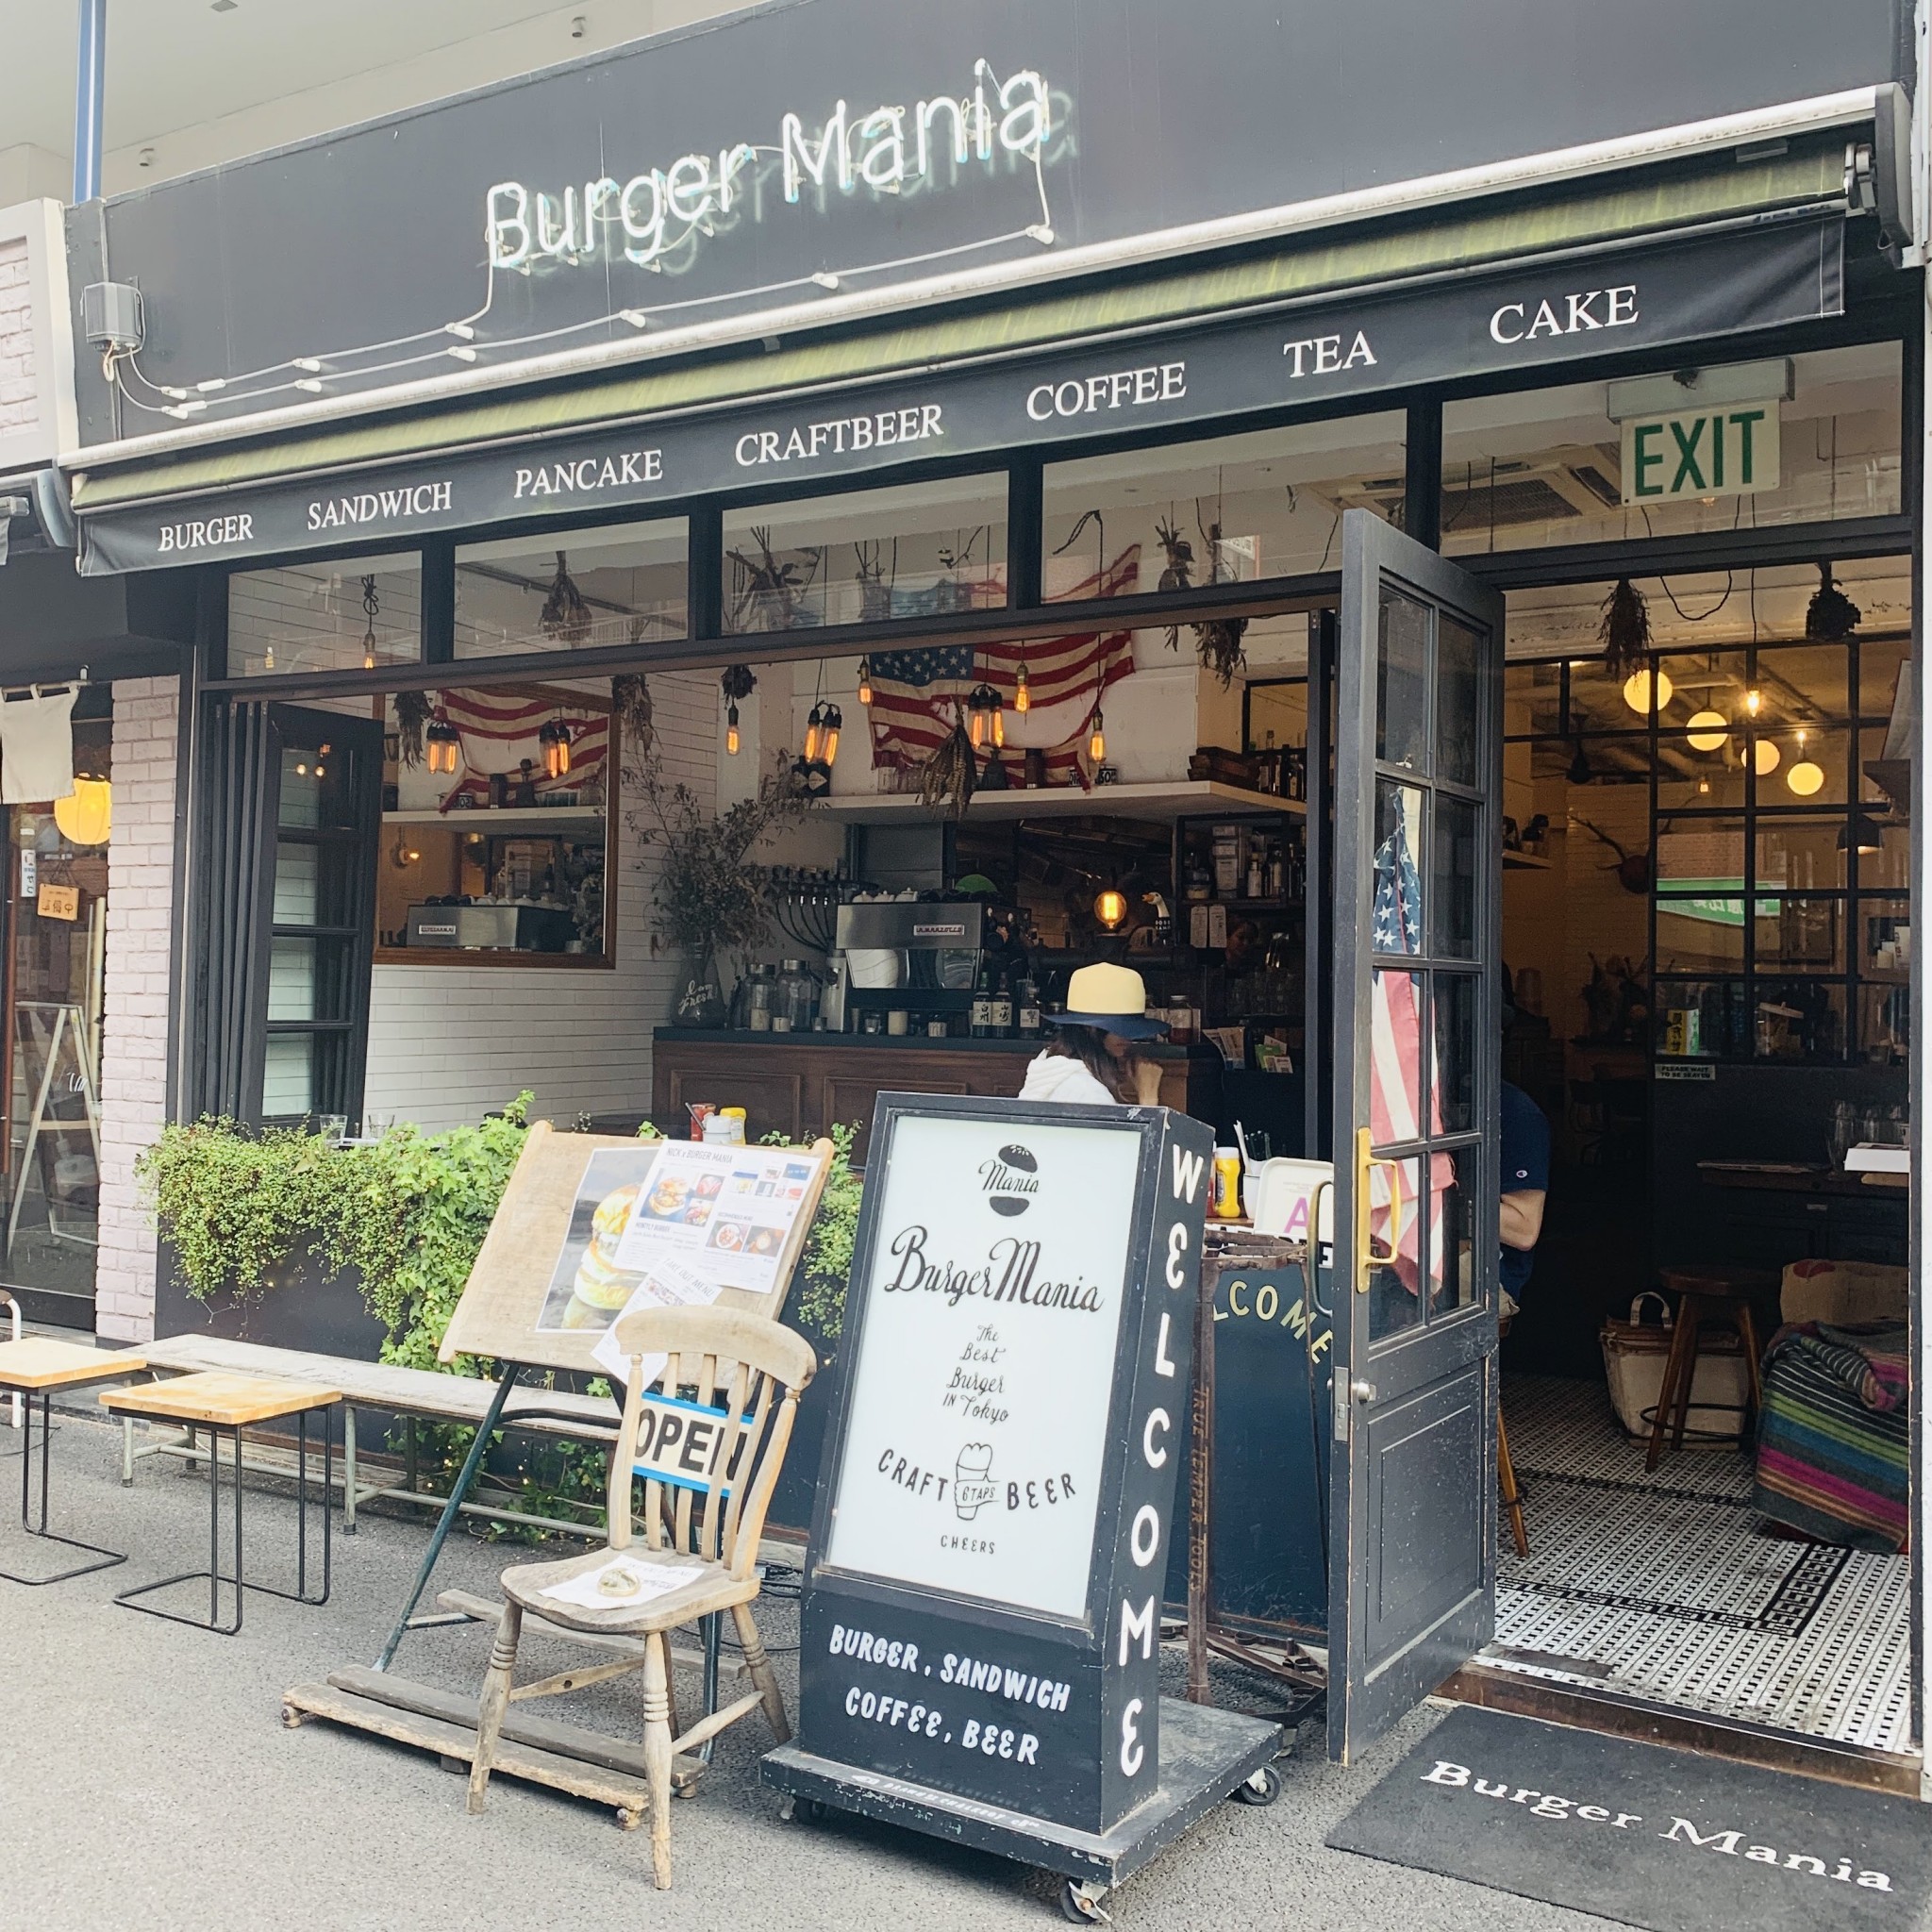 〈Burger Mania〉は恵比寿の他に、広尾と白金にも店舗があり、そちらでも「REIWA Burger」をいただけます。